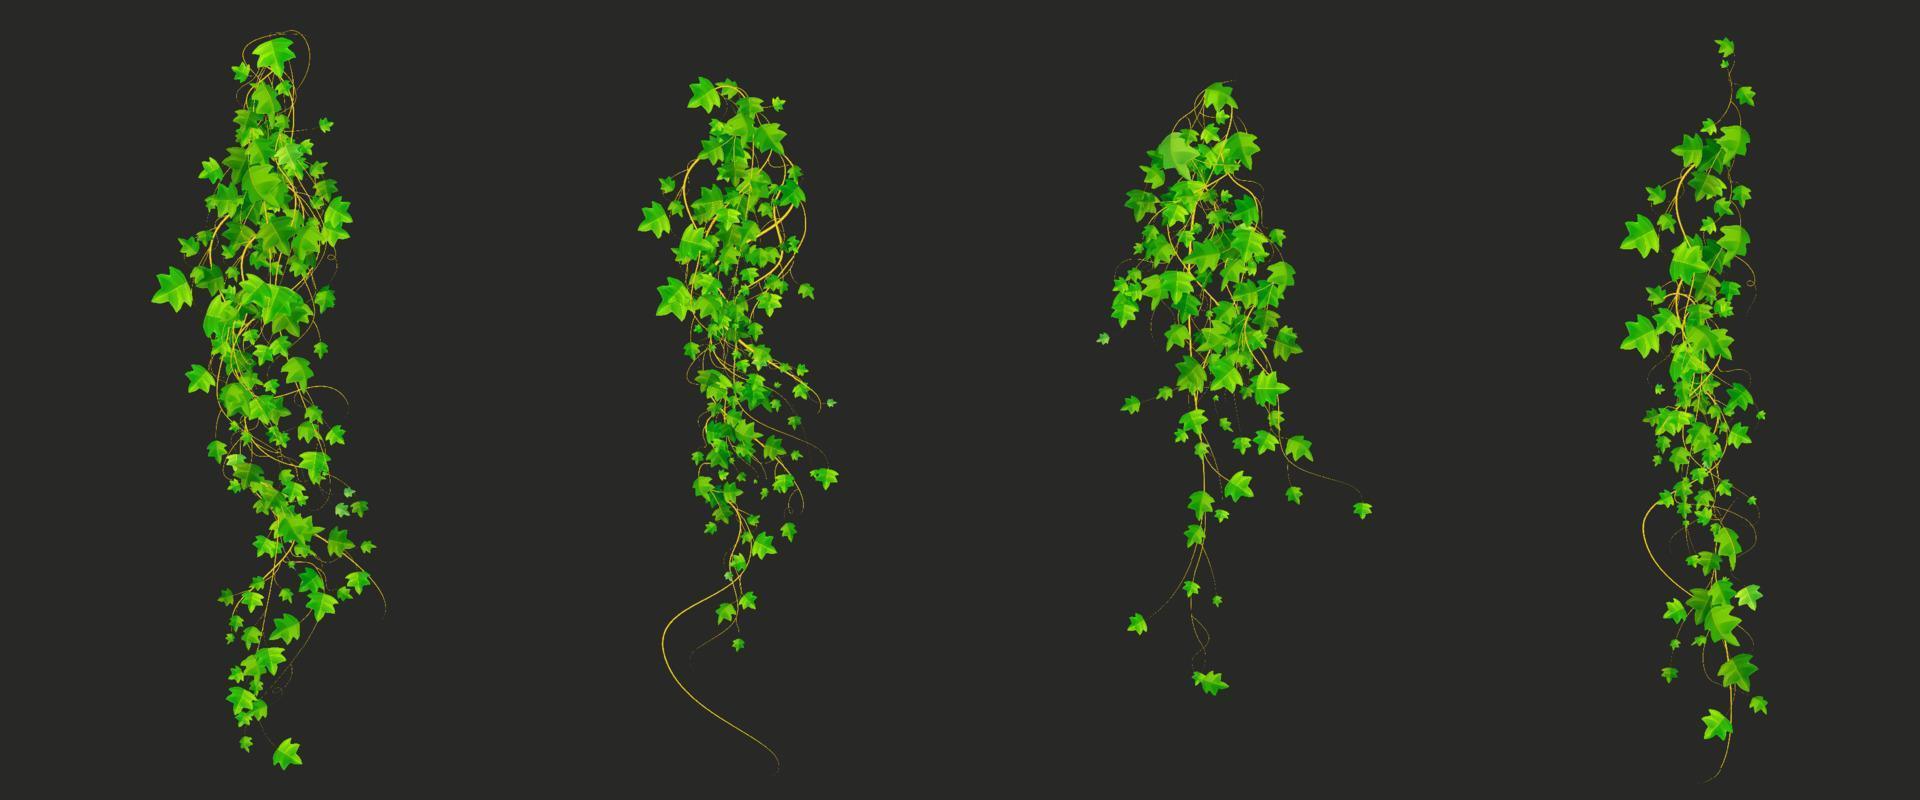 Efeu-Kletterreben mit grünen Pflanzenblättern vektor